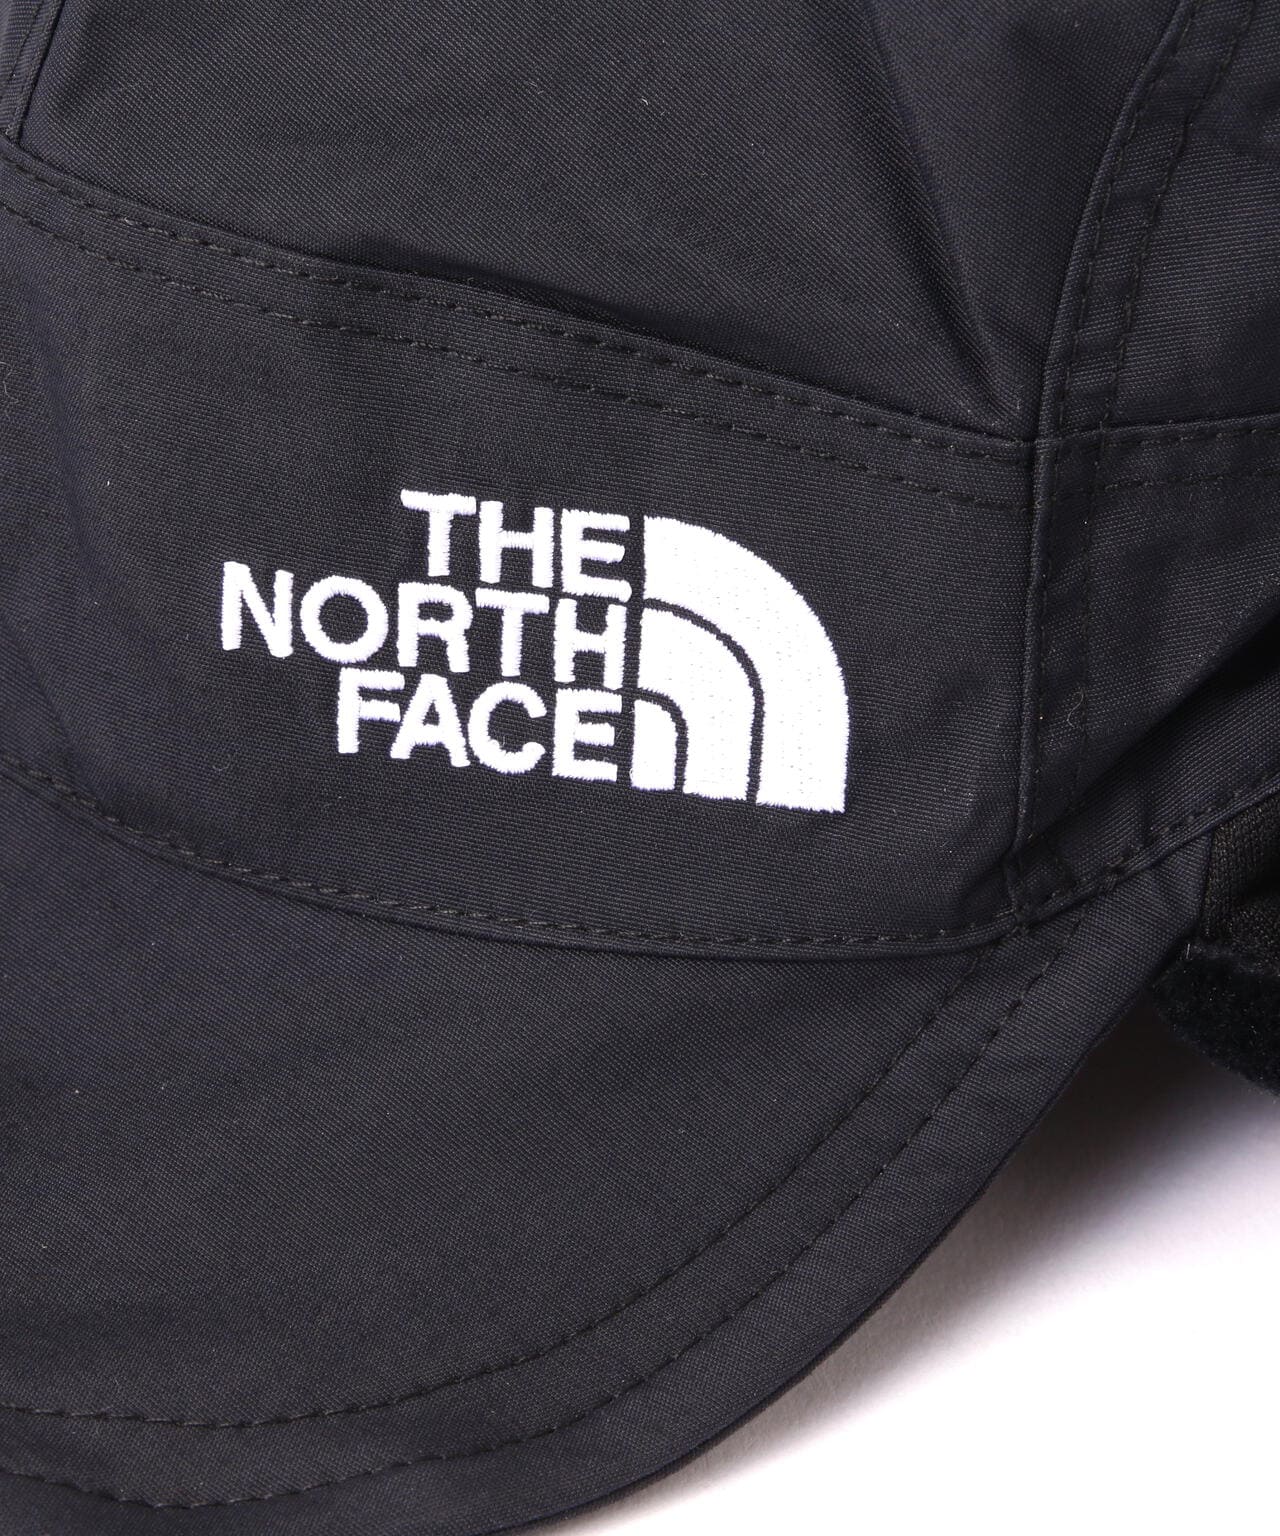 THE NORTH FACE/ザ・ノースフェイス/Expedition Cap/エクスペ ...